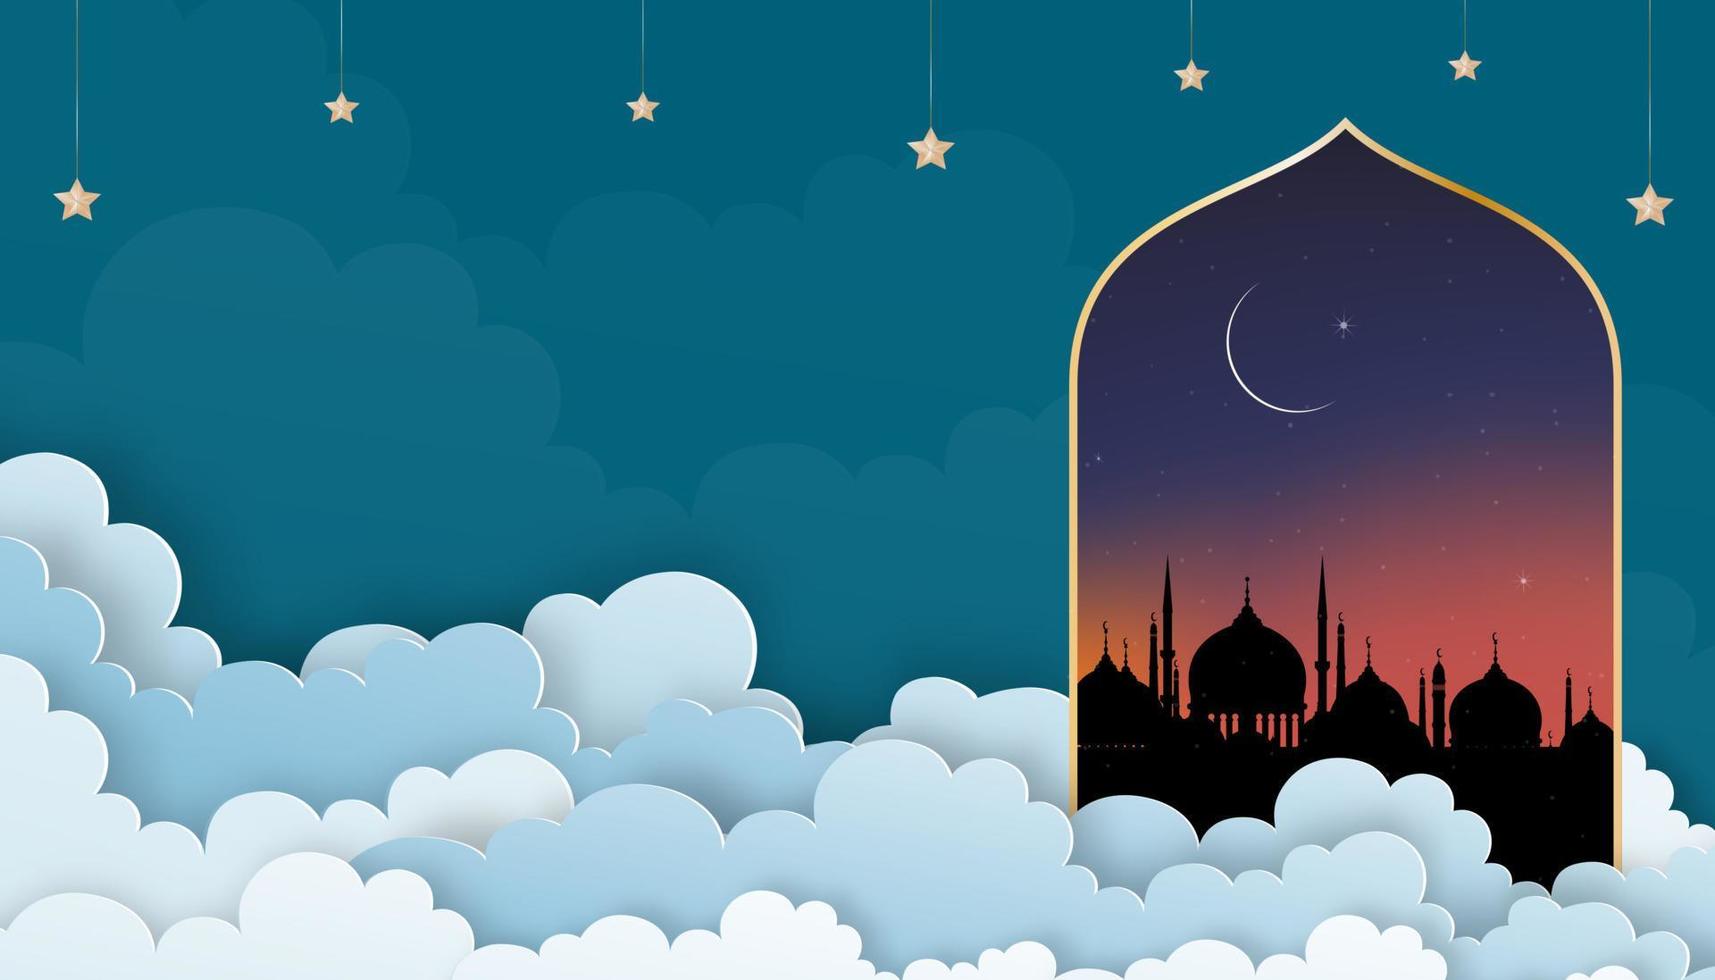 carte islamique avec silhouette dôme mosquées, croissant de lune, ciel orange, vecteur cloudscape couche papier 3d découpé, bannière de fond de ciel pour la religion islamique, eid al-adha, eid mubarak, eid al fitr, ramadan kareem